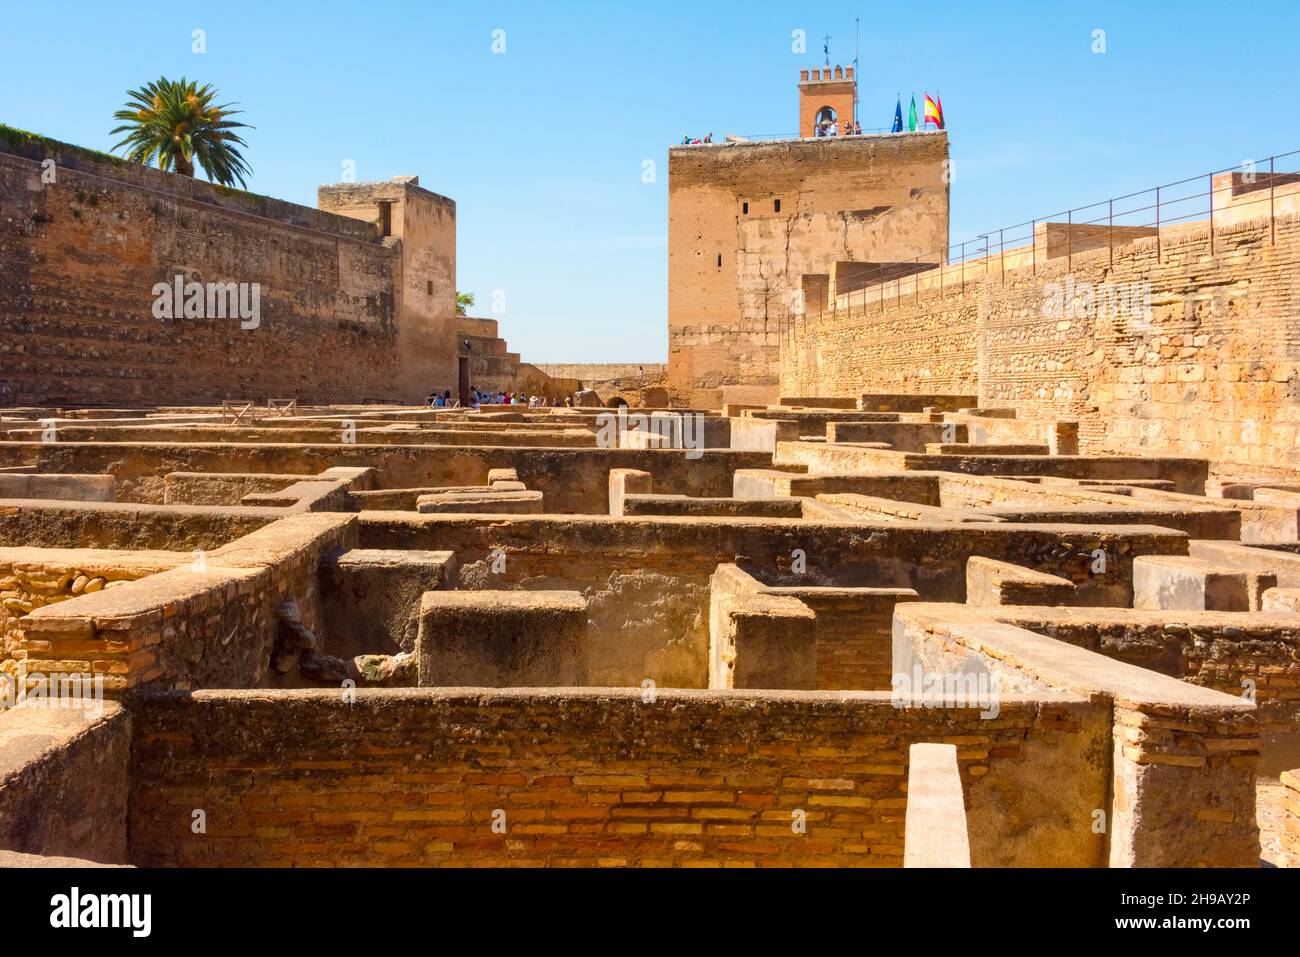 Arms Square, l'entrée originale de l'Alcazaba, forteresse de l'Alhambra, Grenade, province de Grenade, Communauté autonome d'Andalousie,Espagne Banque D'Images